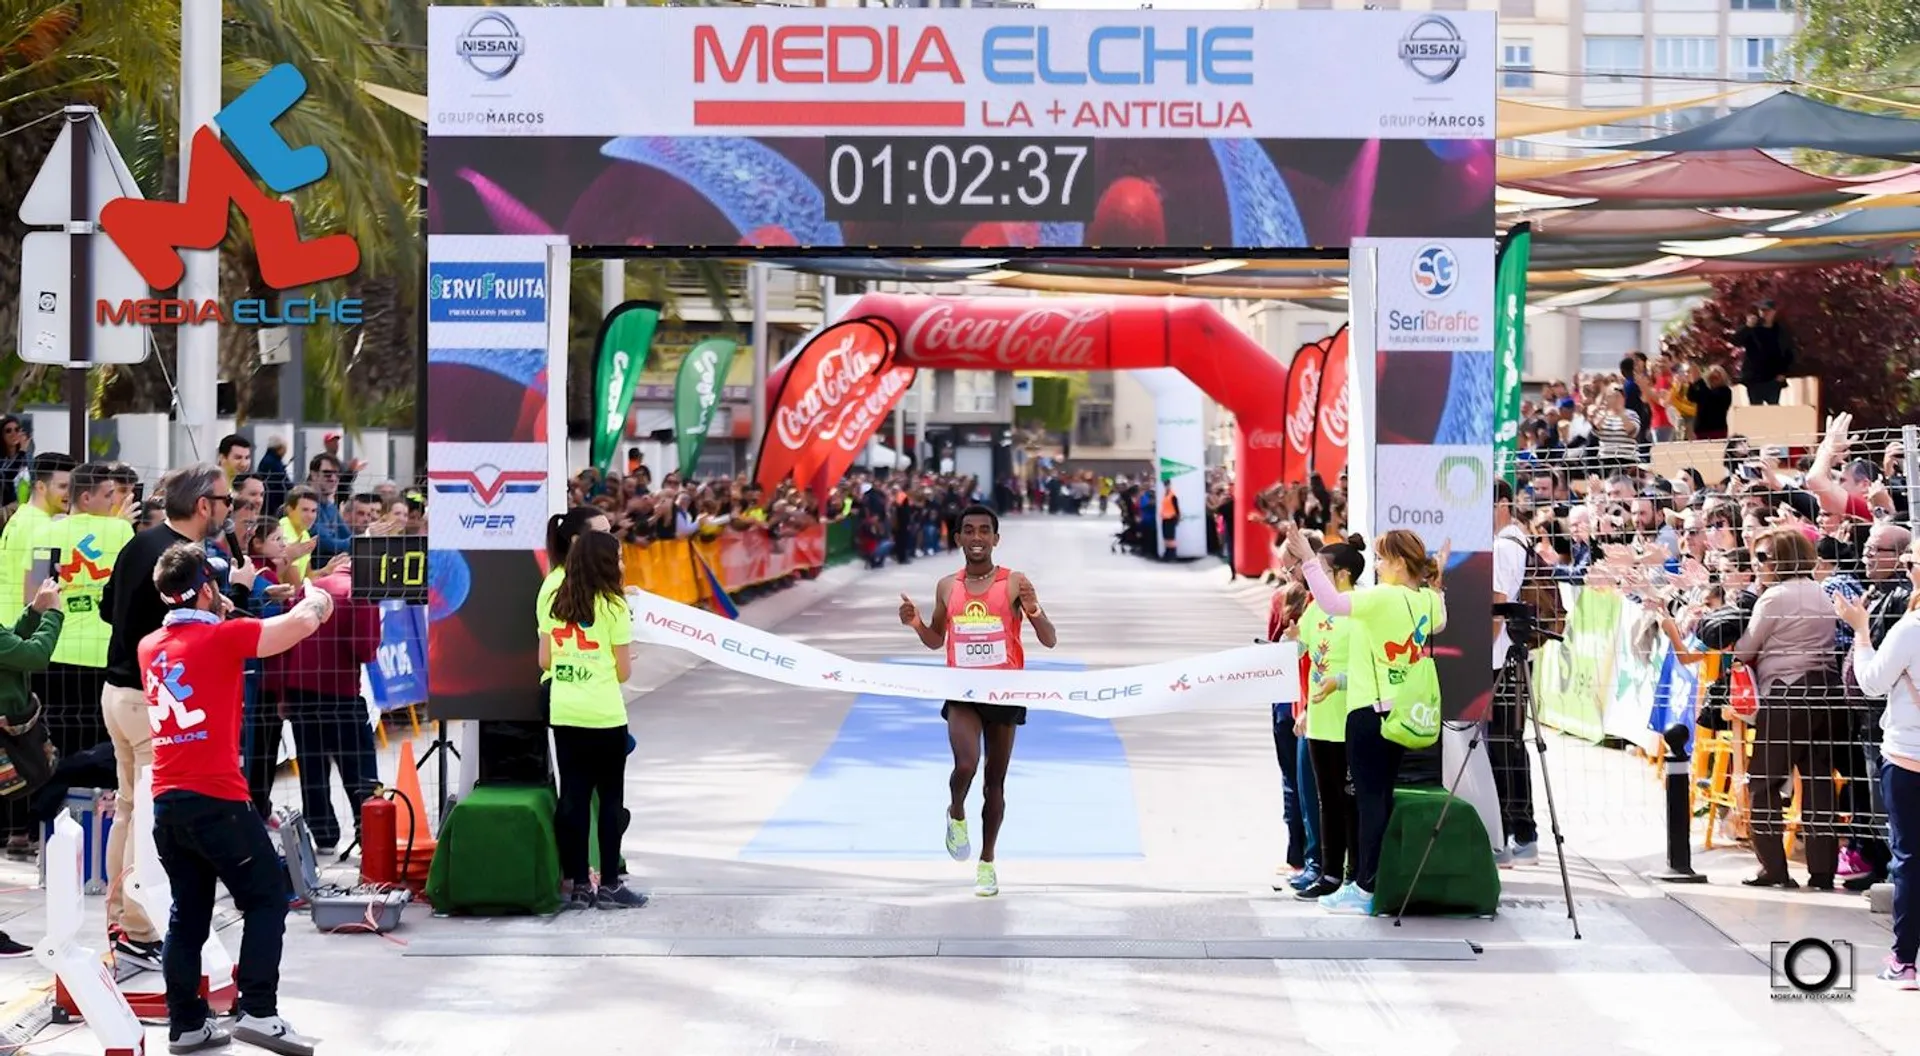 Elche Half Marathon - The Oldest of the World